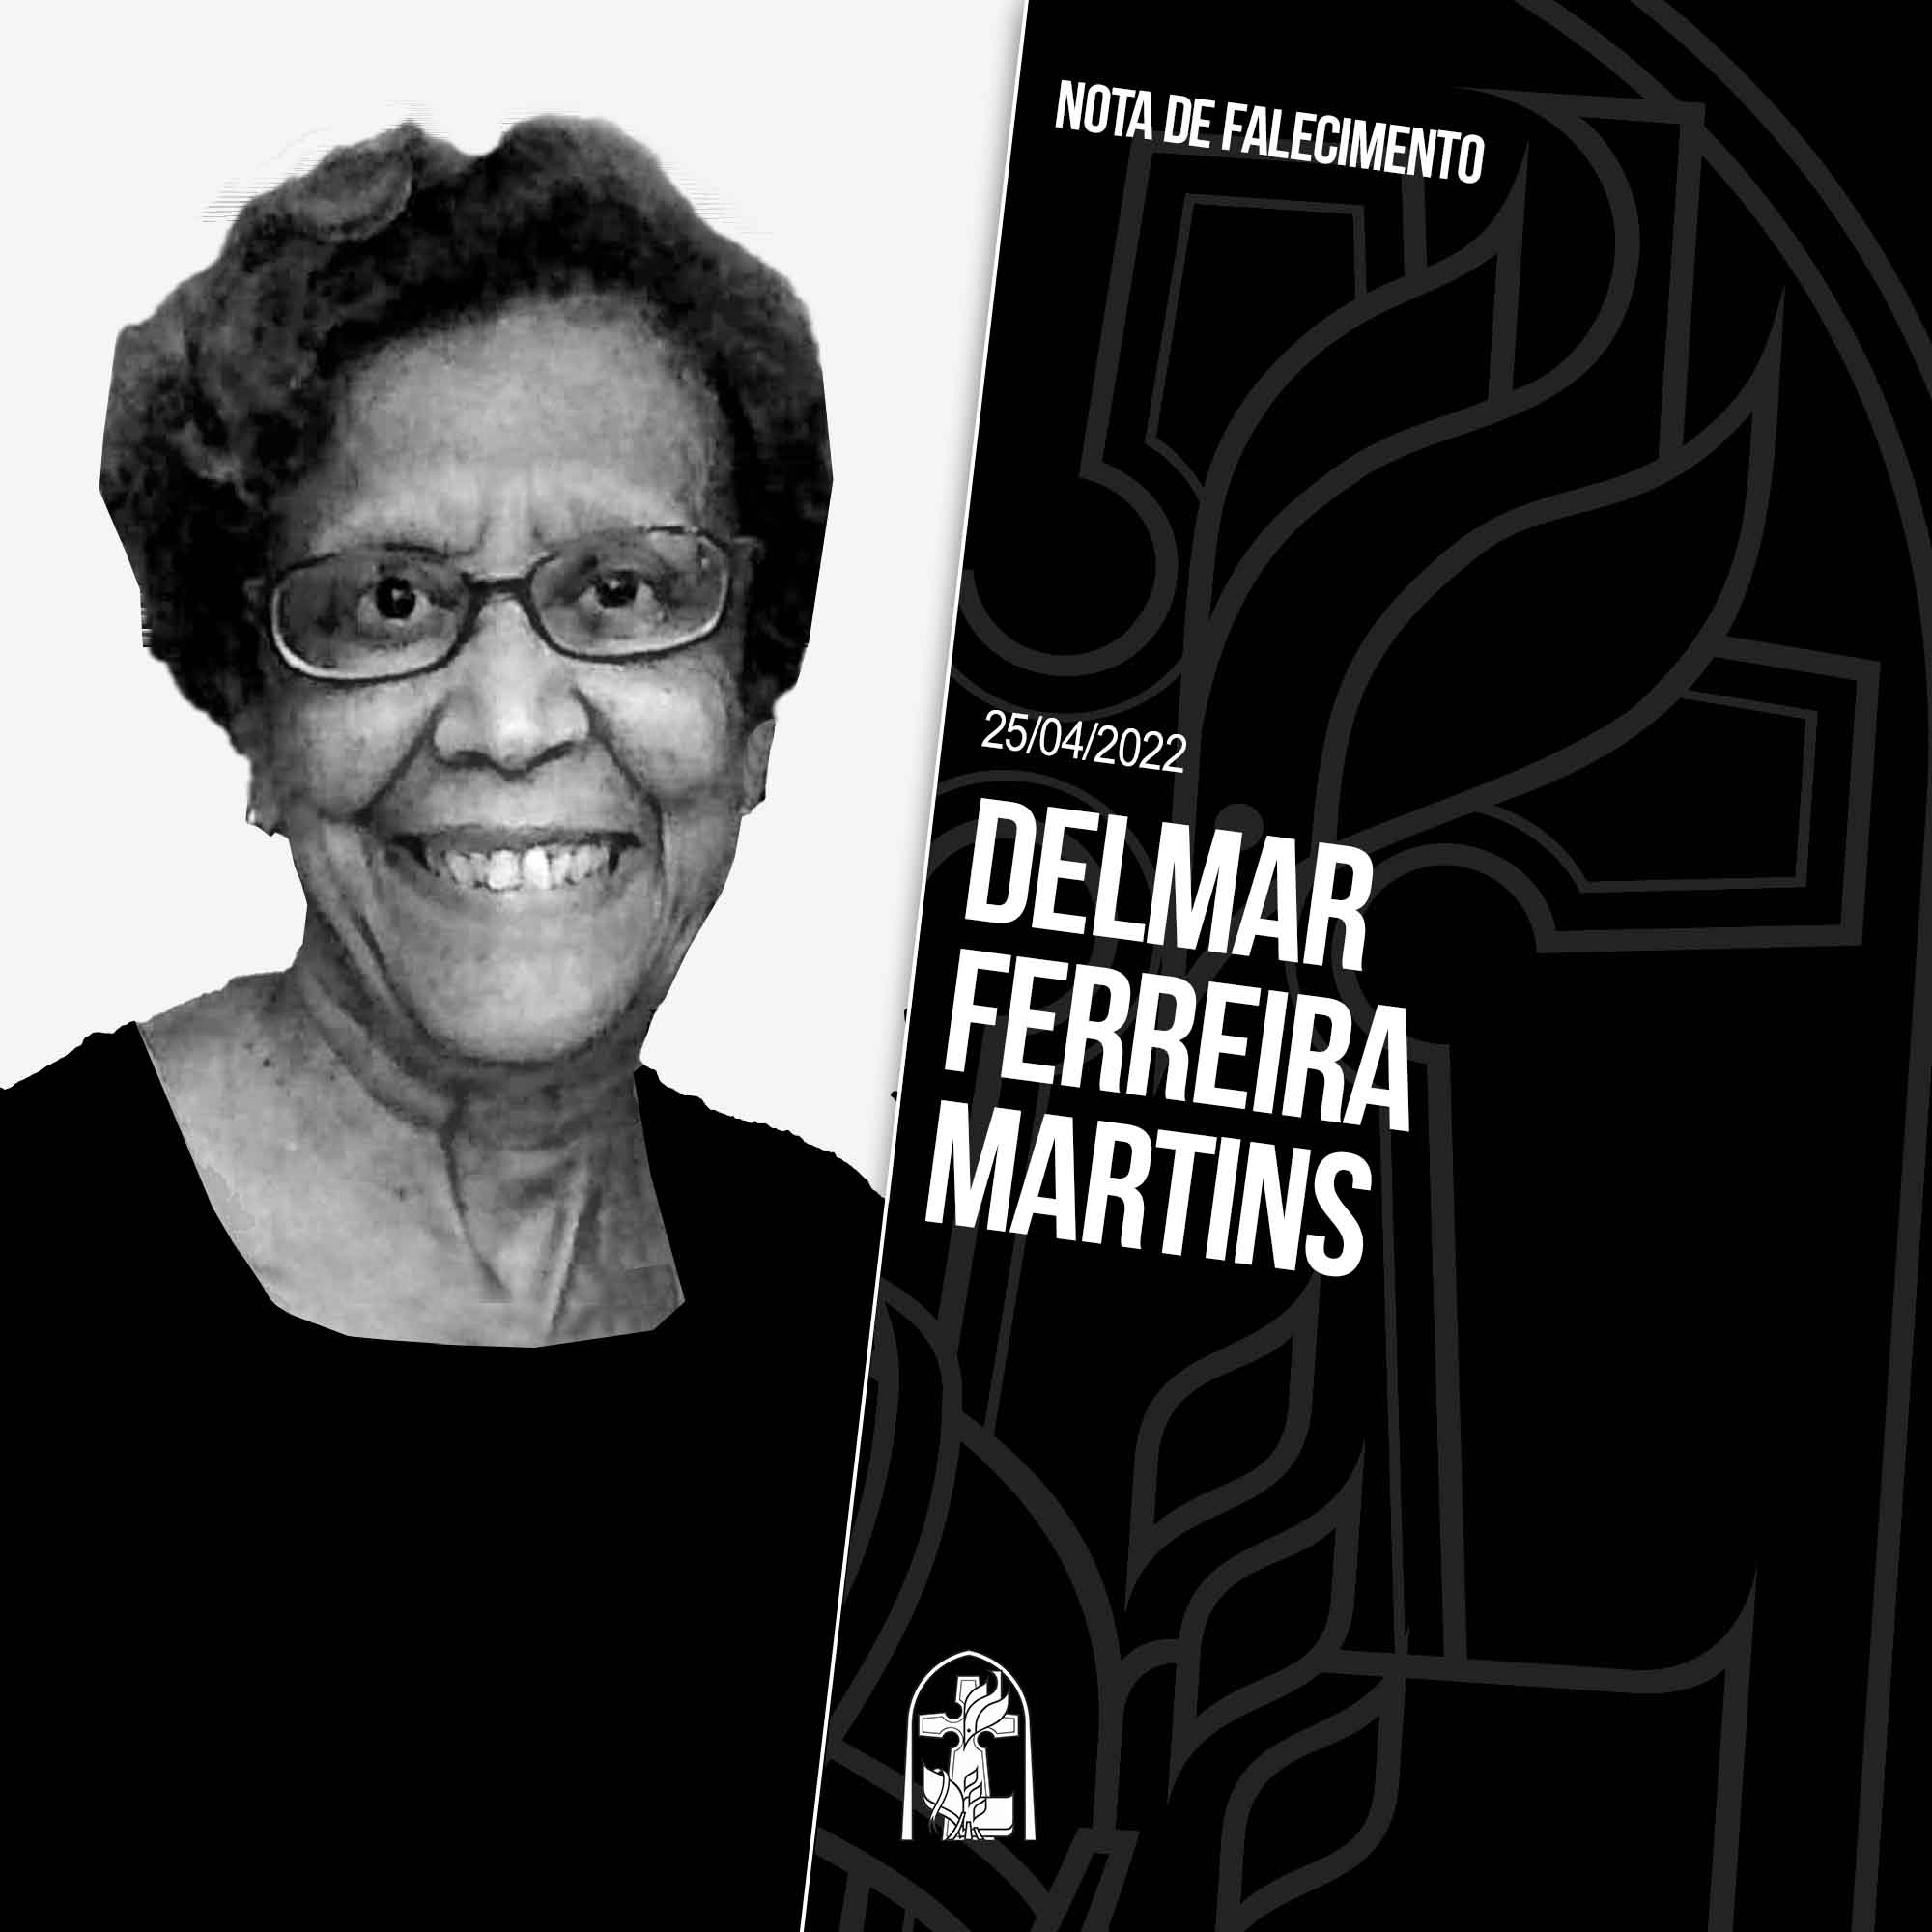 Delmar Ferreira Martins